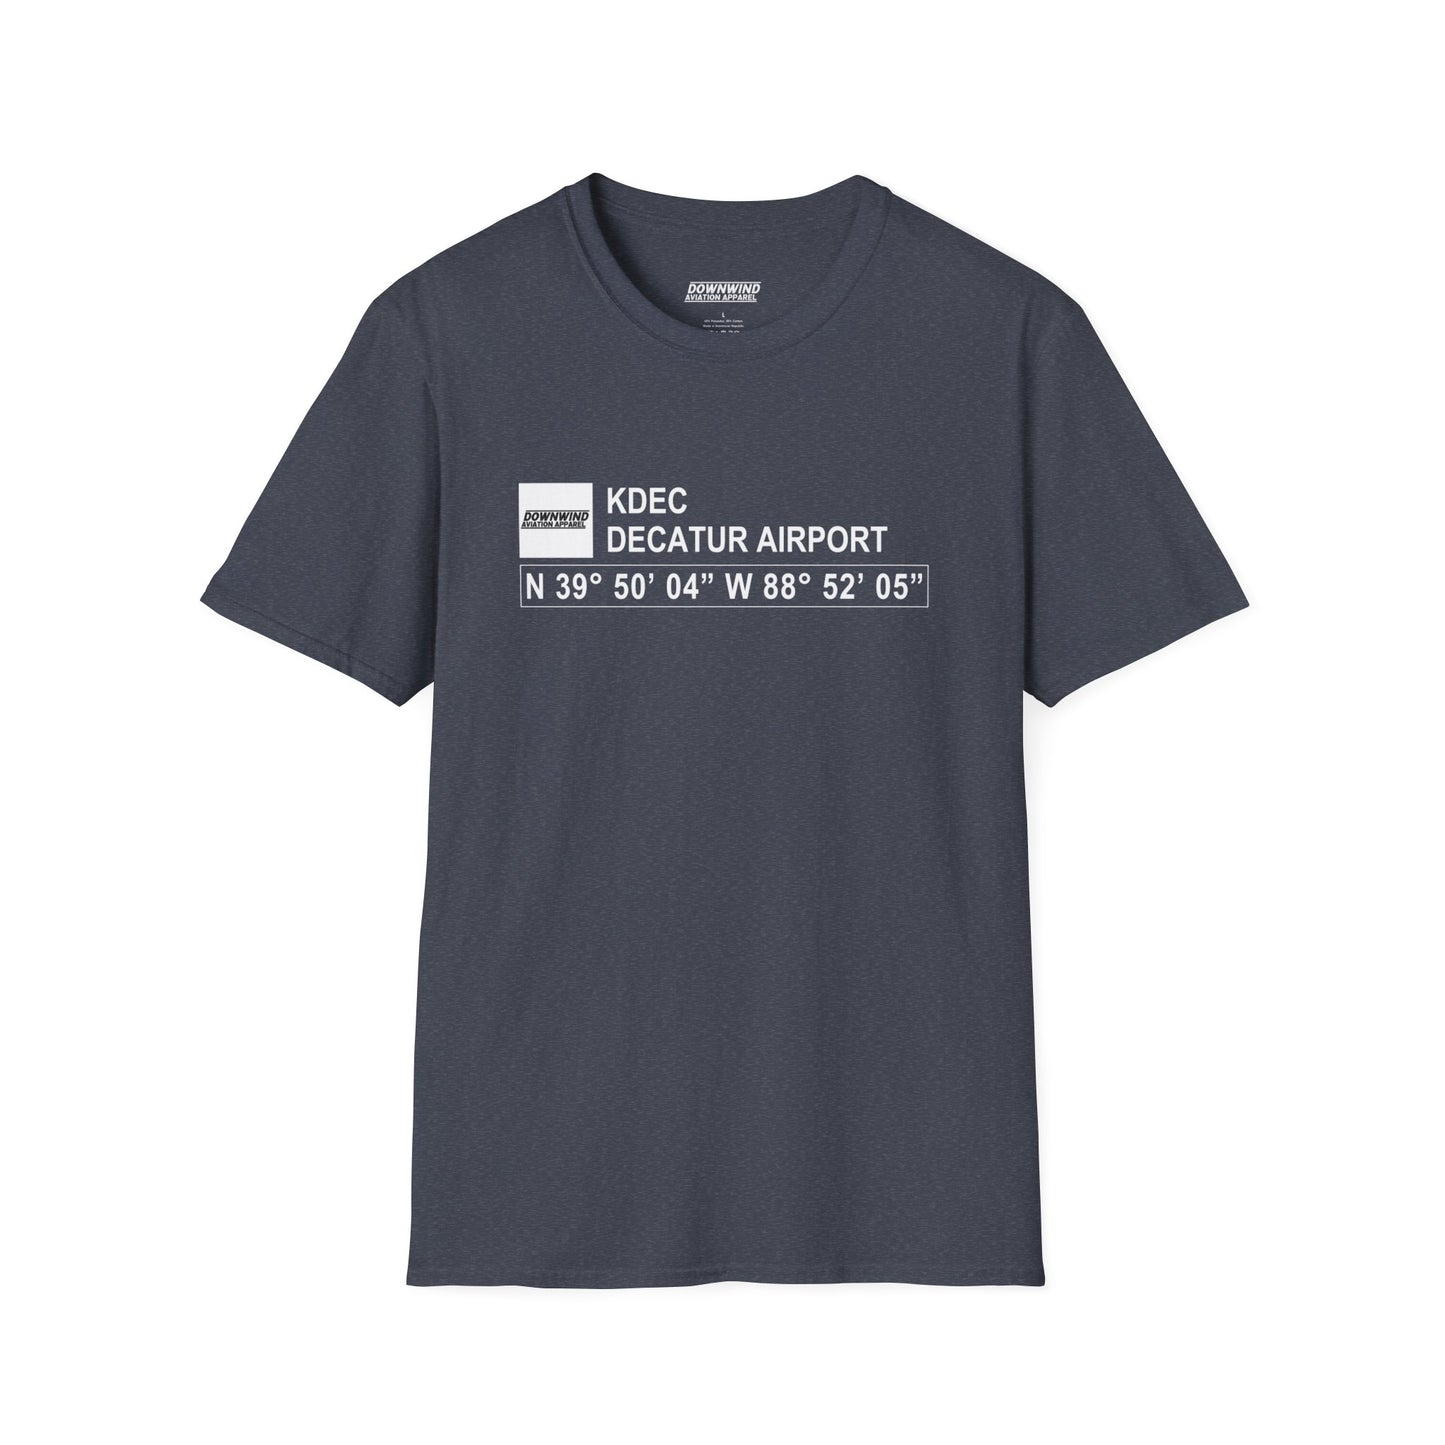 KDEC / Decatur Airport T-Shirt